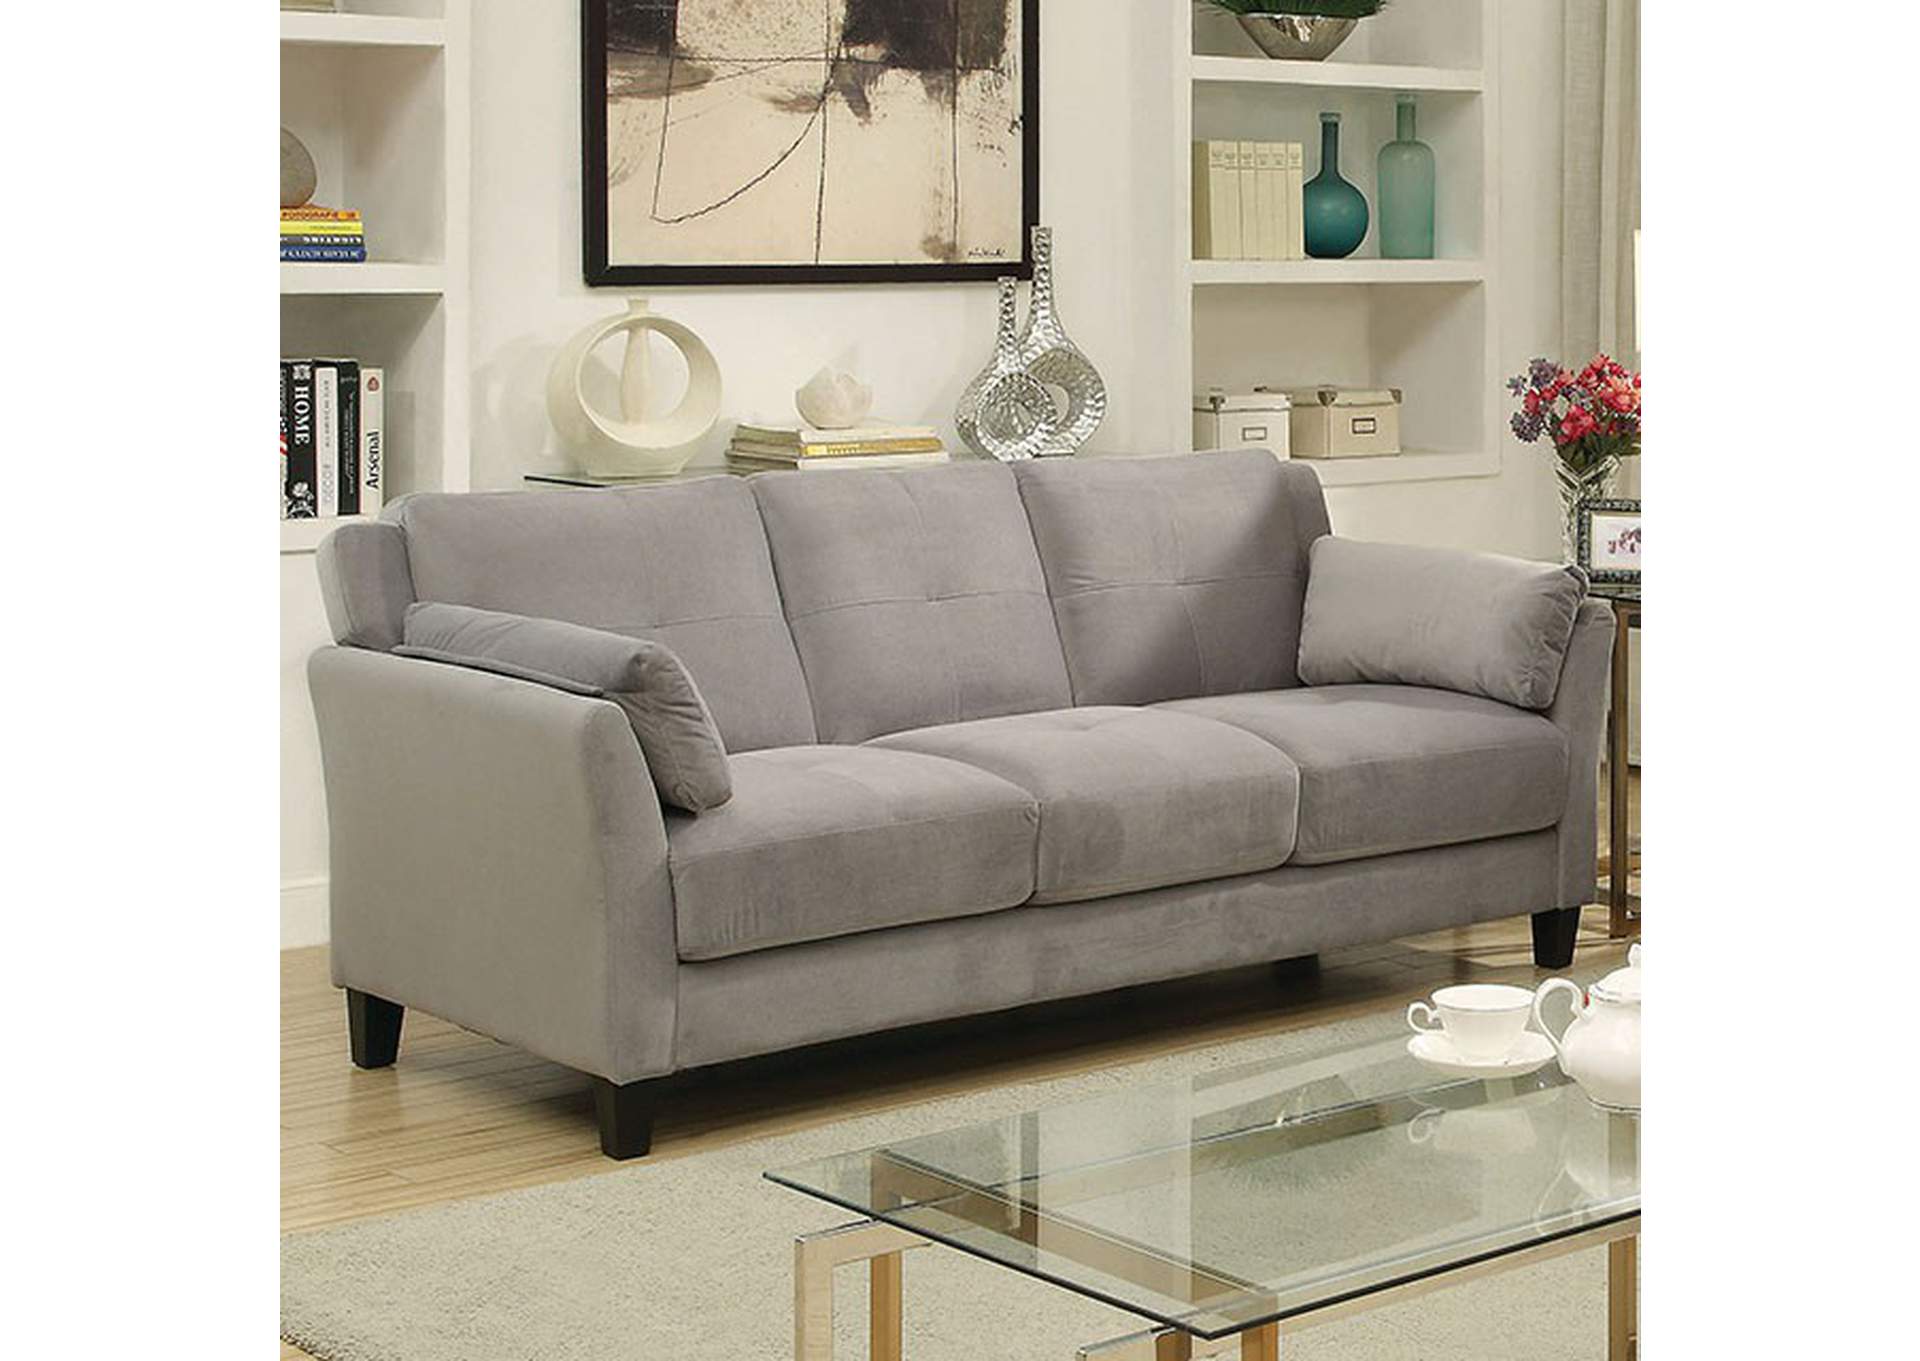 Ysabel Sofa,Furniture of America